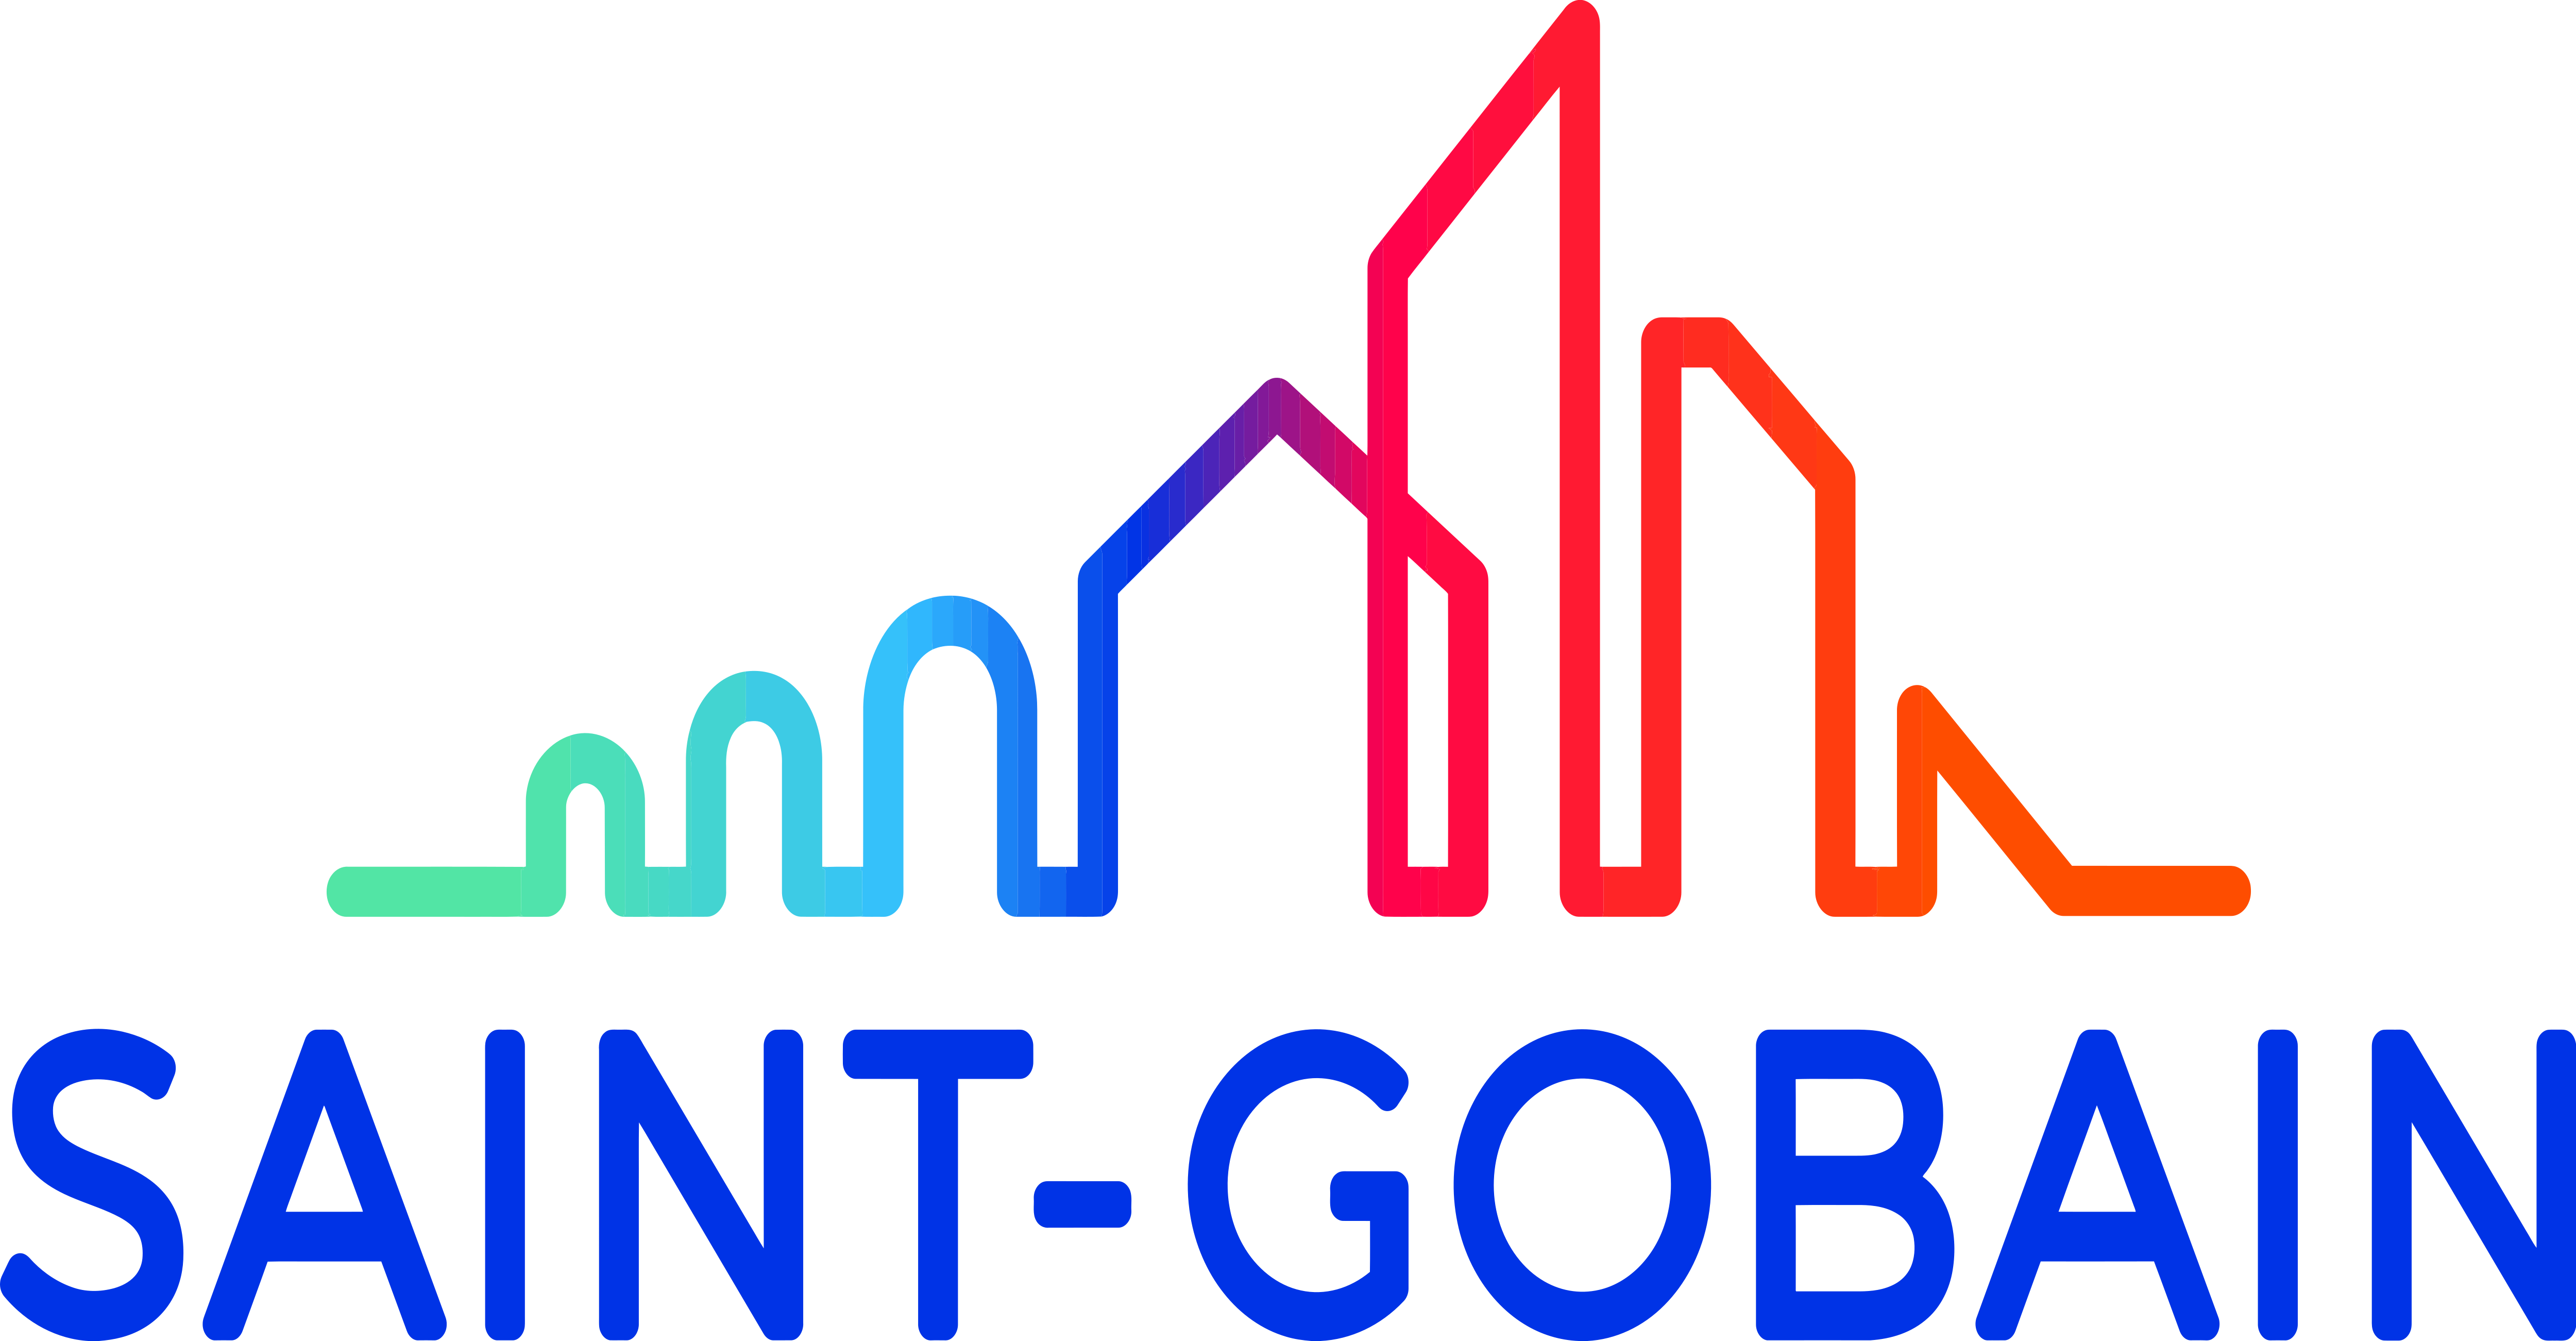 Saint Gobain Logos Download